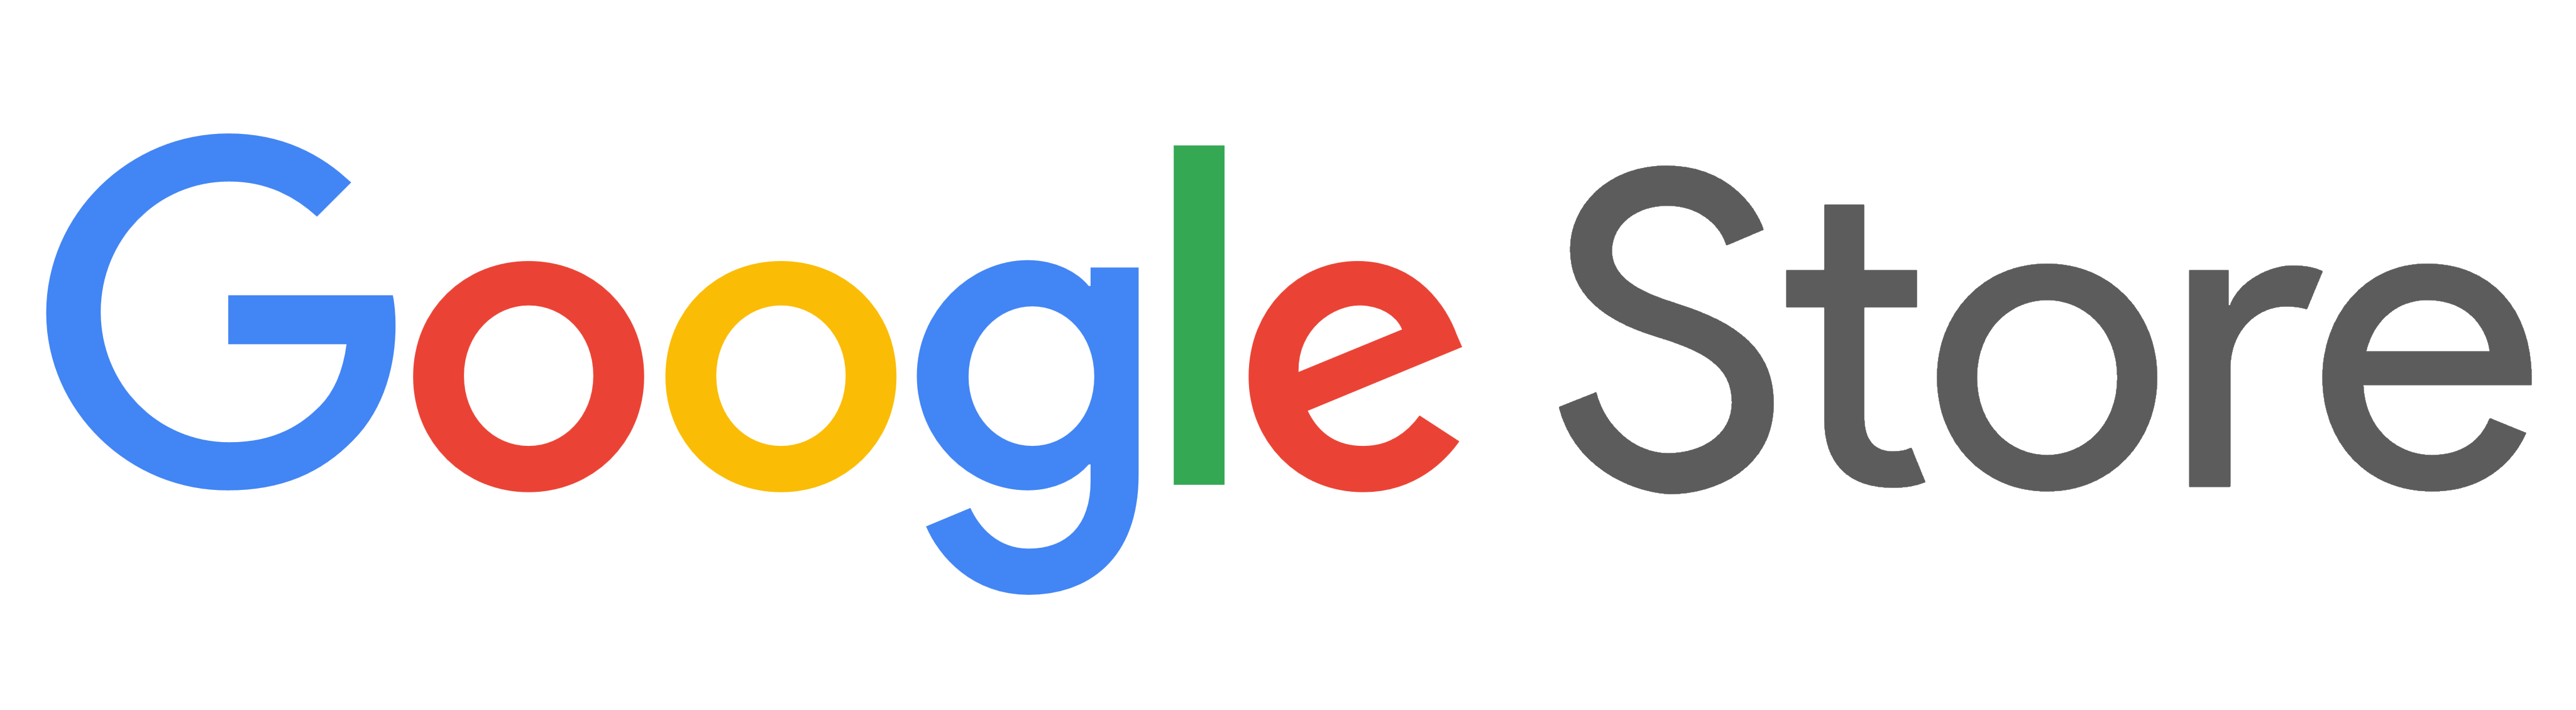 Google Store logo, logotype